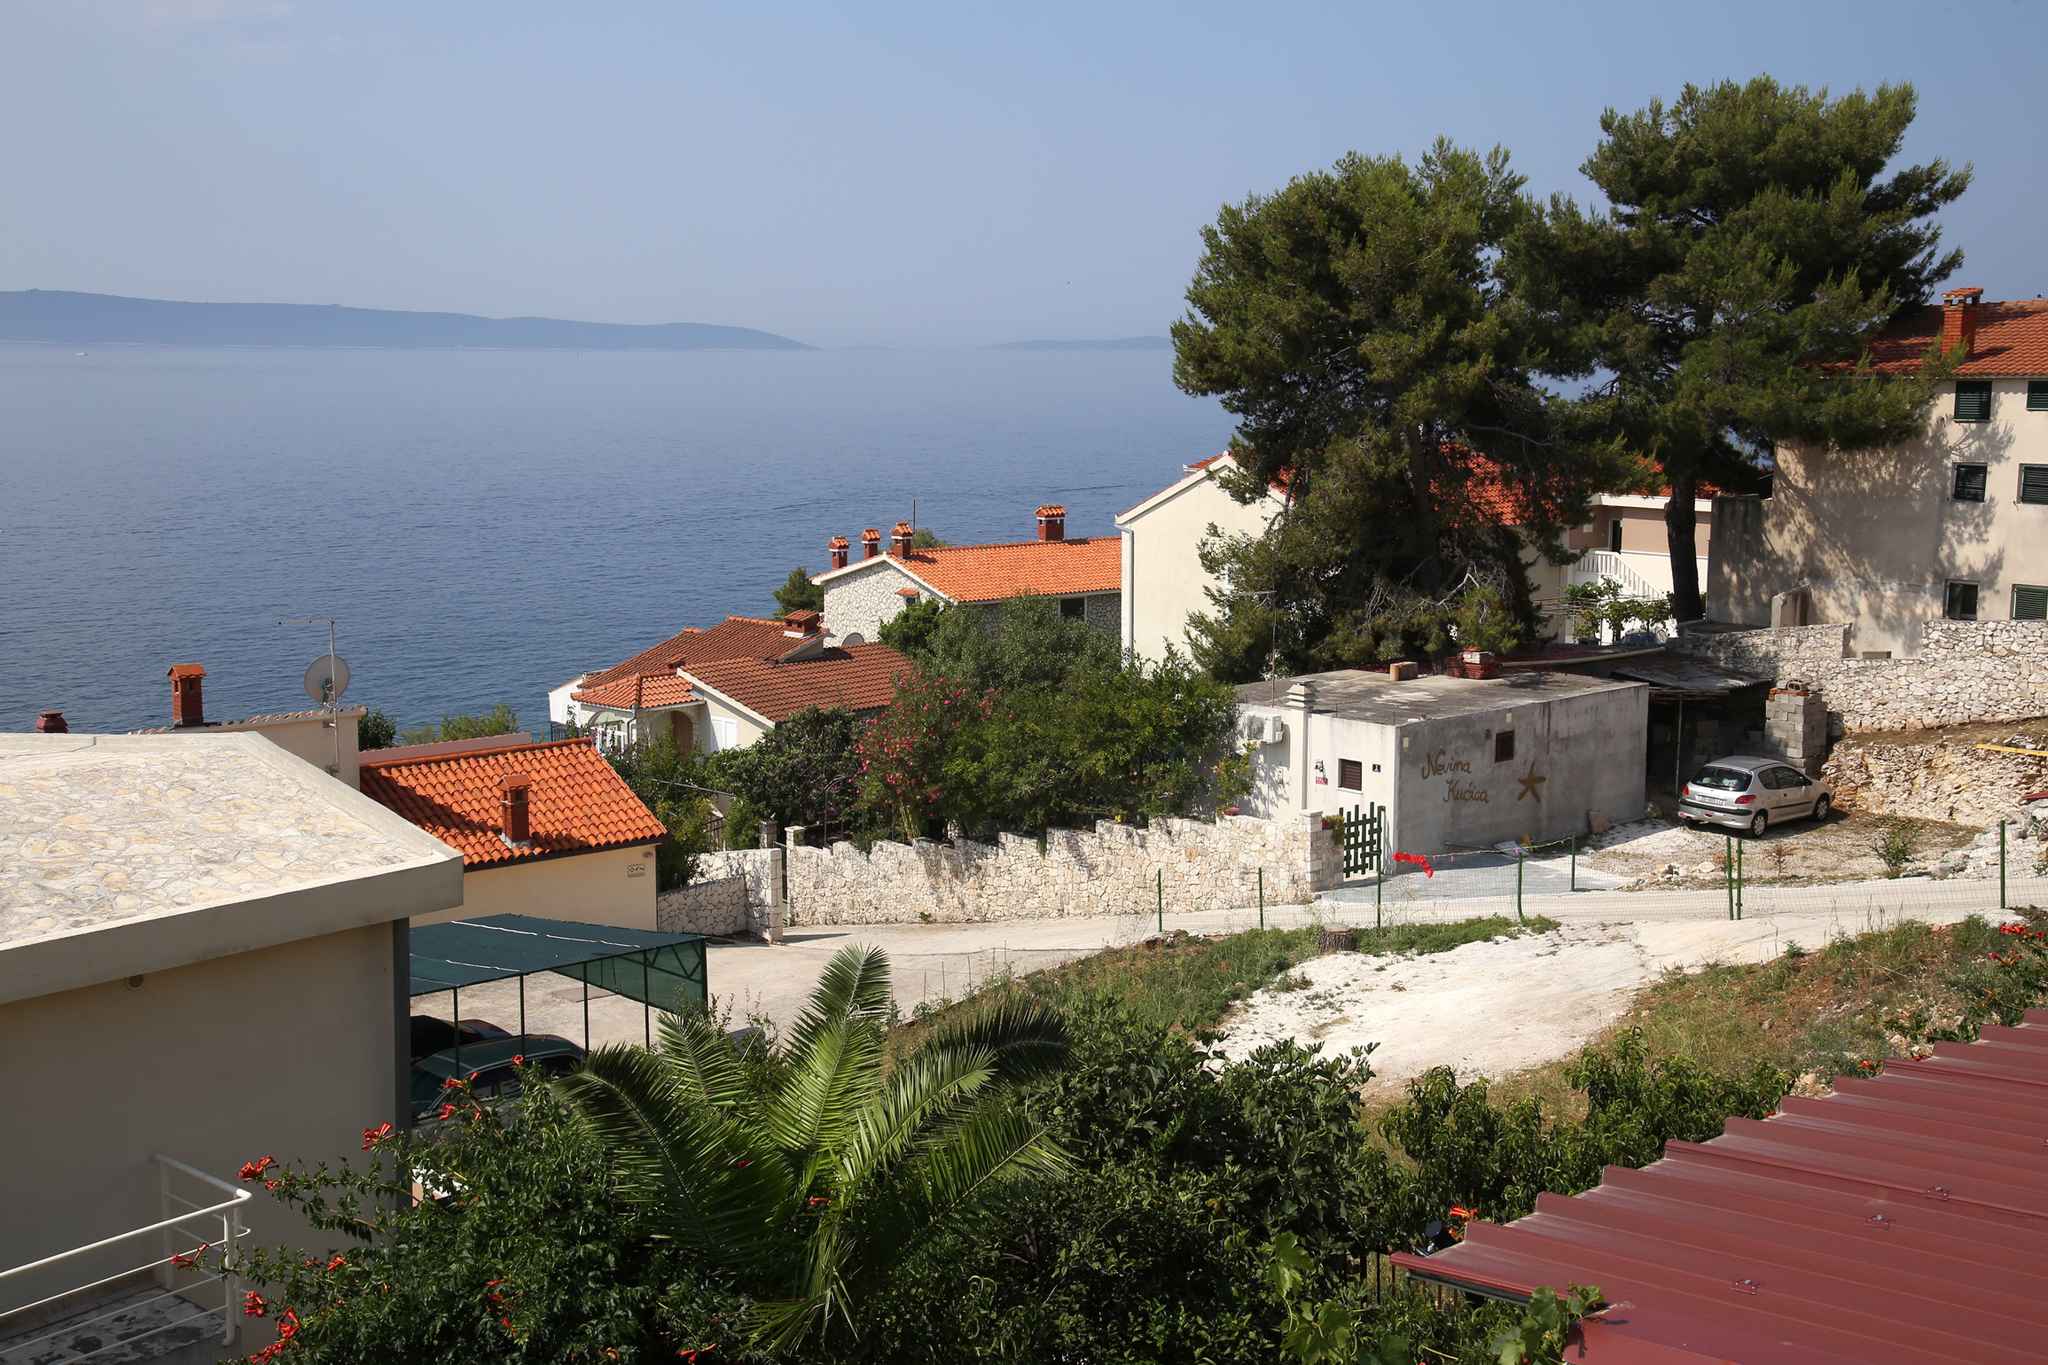 Ferienwohnung mit 2 Terrassen, Meerblick und 20 m   in Kroatien